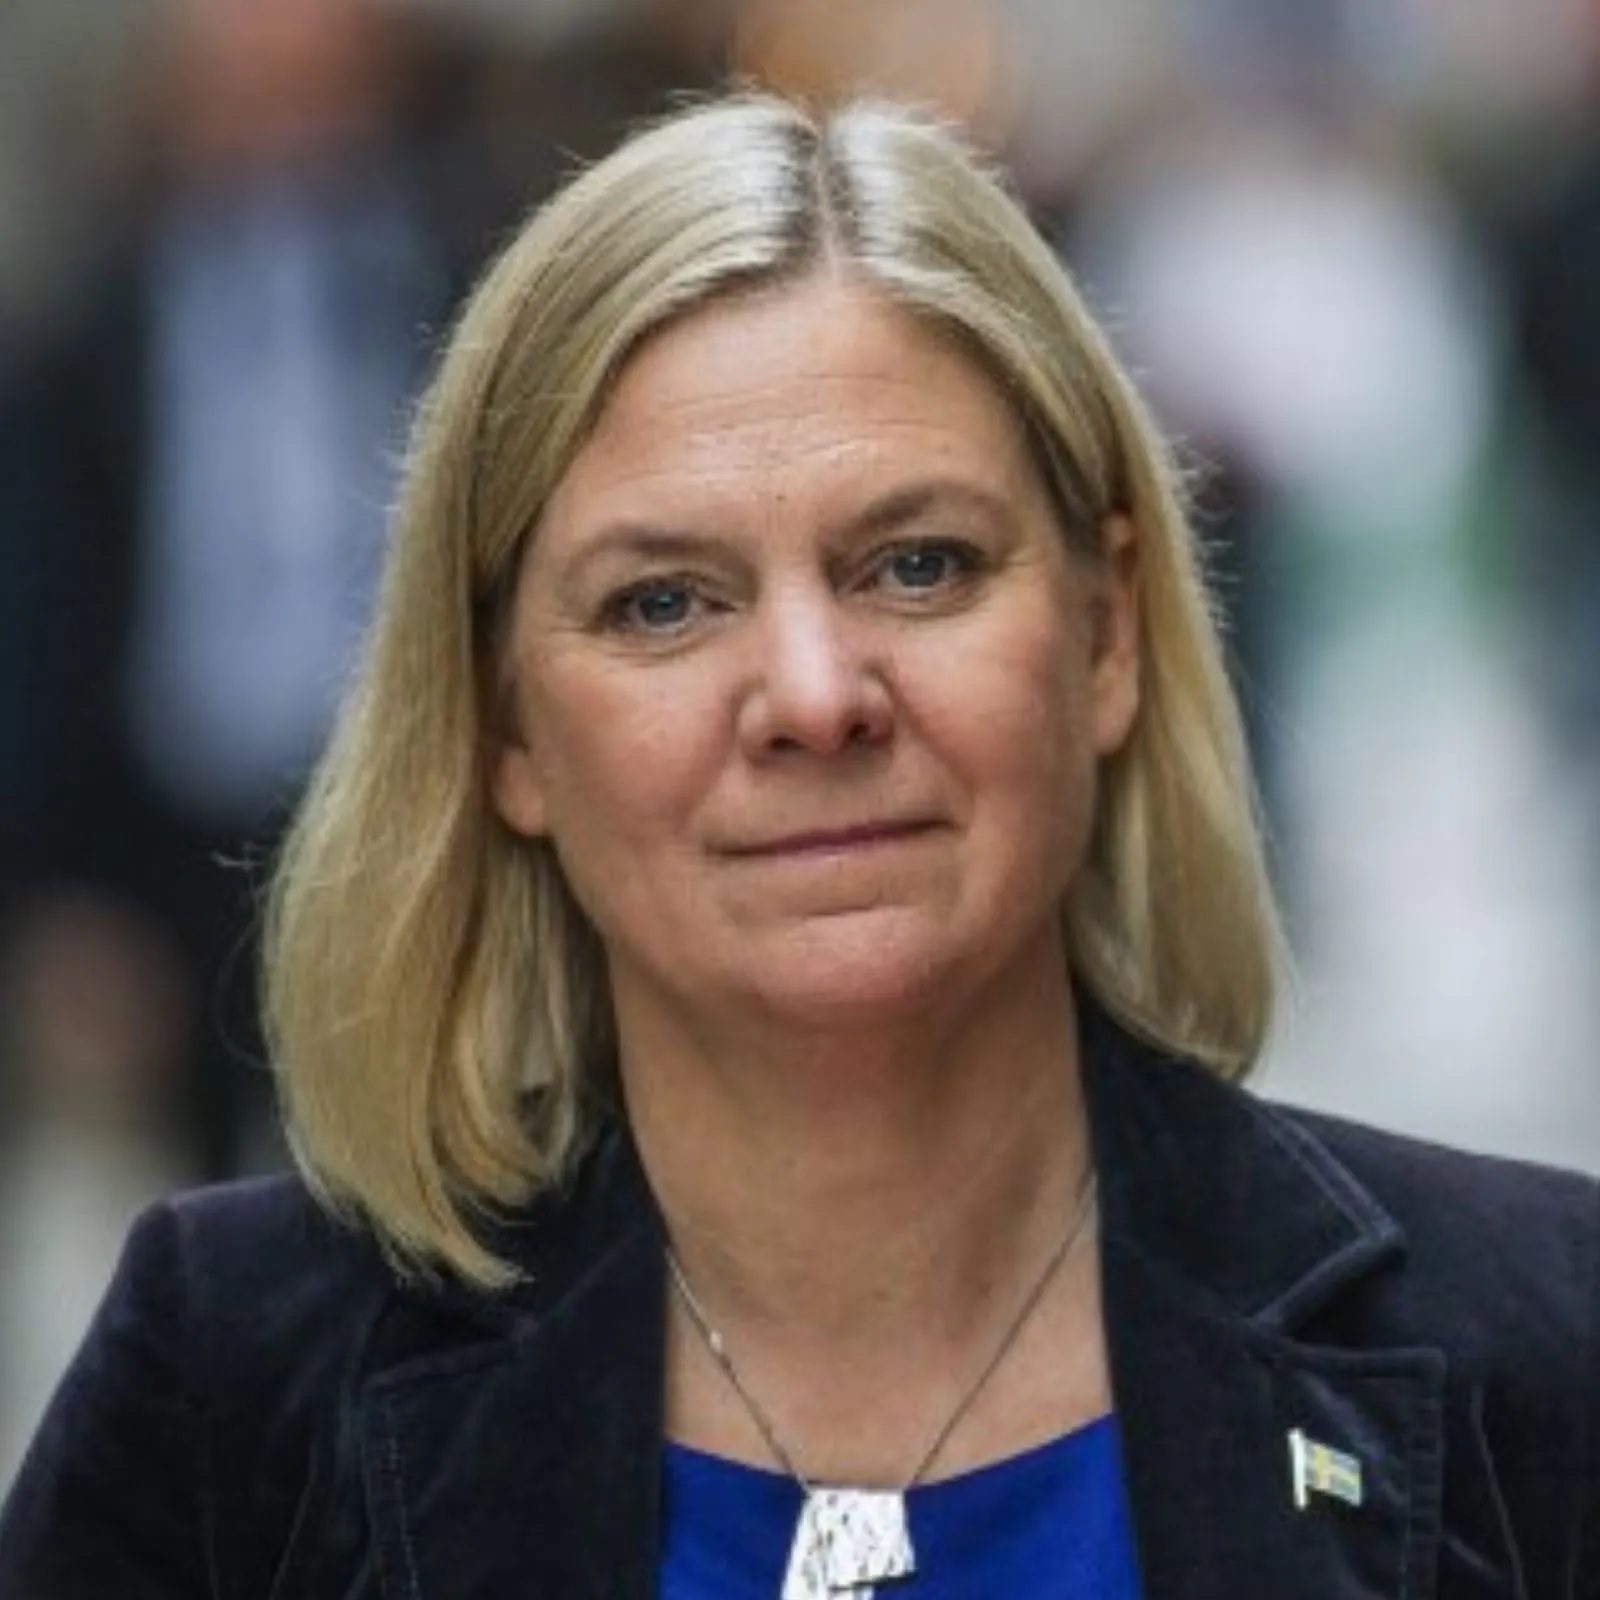 Nữ Thủ tướng từ chức 7 giờ sau khi được bầu trở thành Thủ tướng Thụy Điển một lần nữa - Ảnh 1.